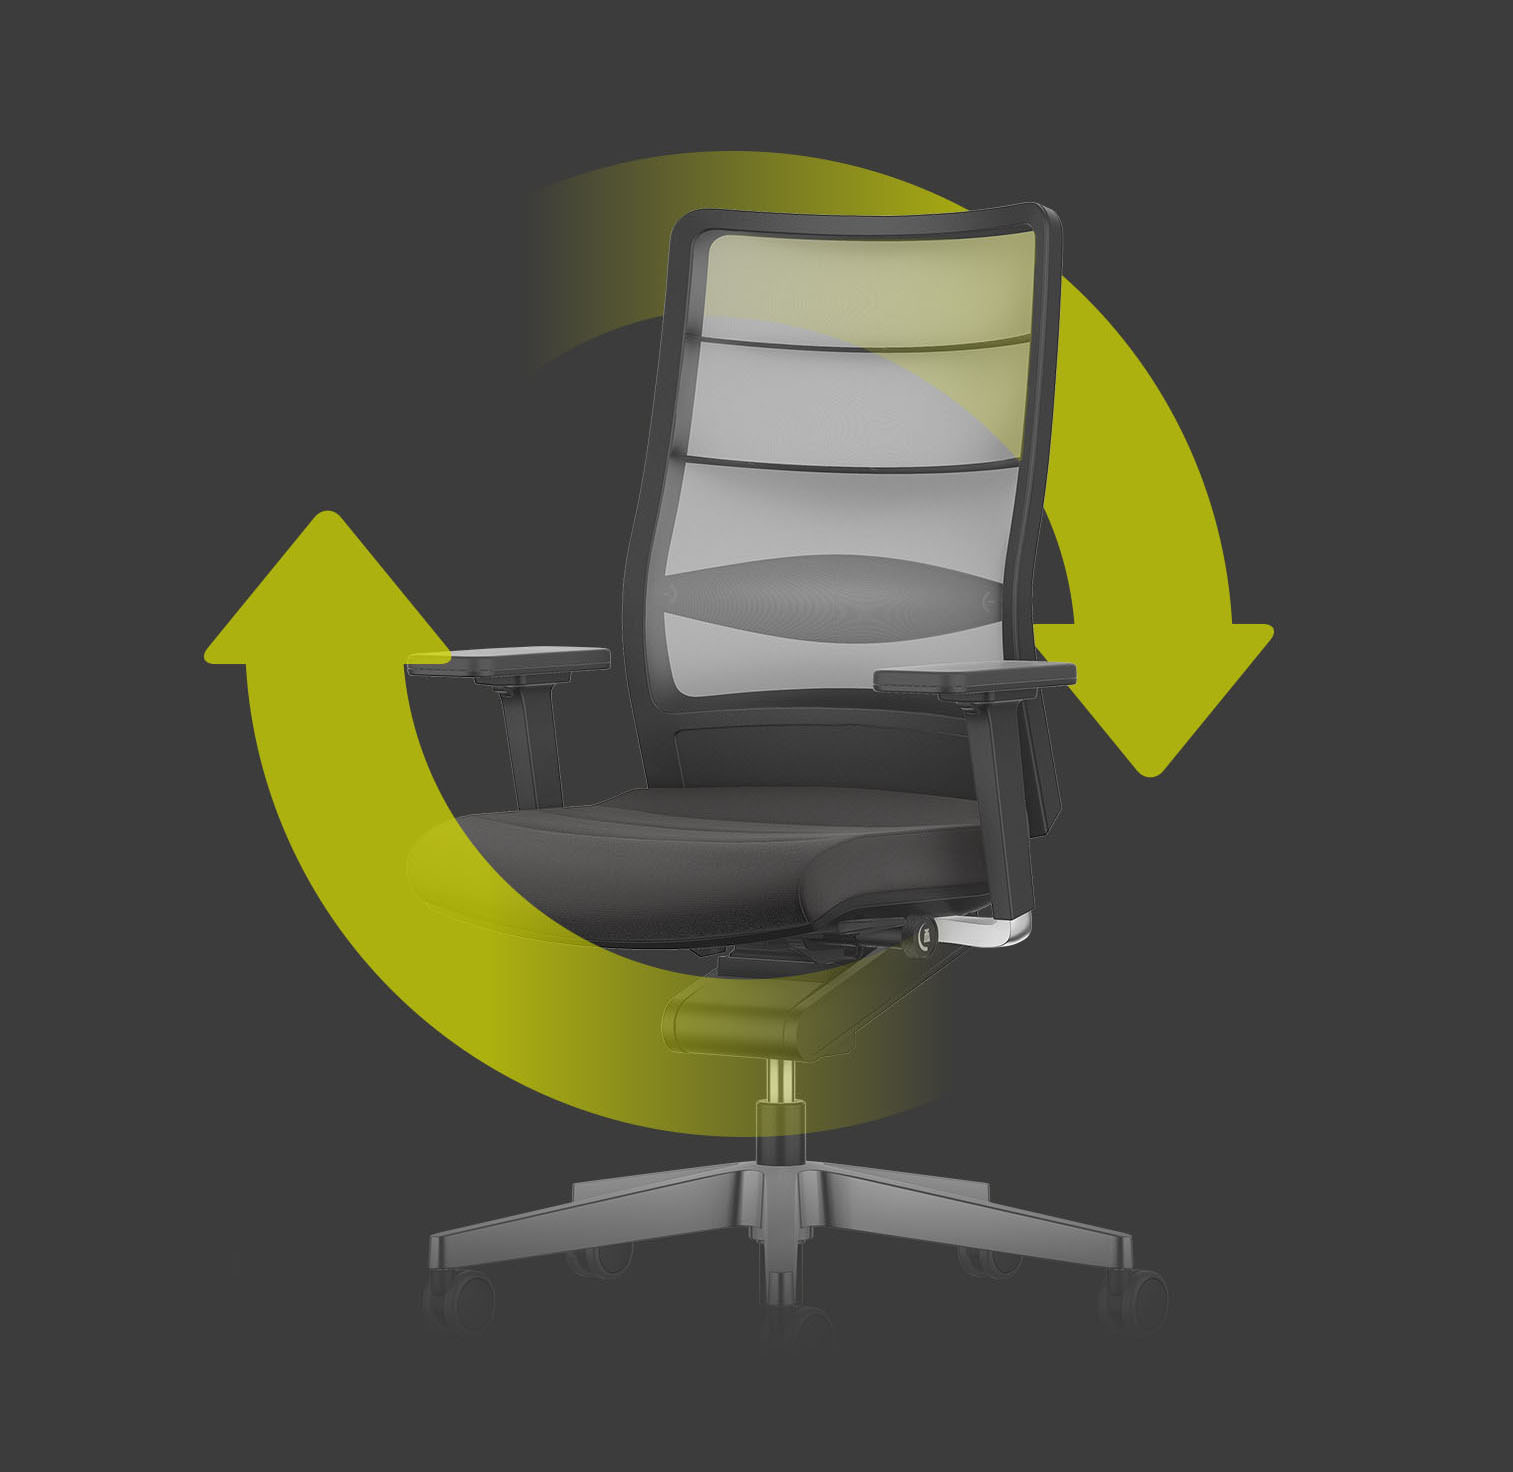 Bürodrehstuhl AIRPAD in Schwarz mit hellem Netzrücken mit zwei grünen Pfeilen, die um den Stuhl einen Kreis bilden. Diese weisen auf die Nachhaltigkeit und Wiederverwendbarkeit des Stuhls hin.